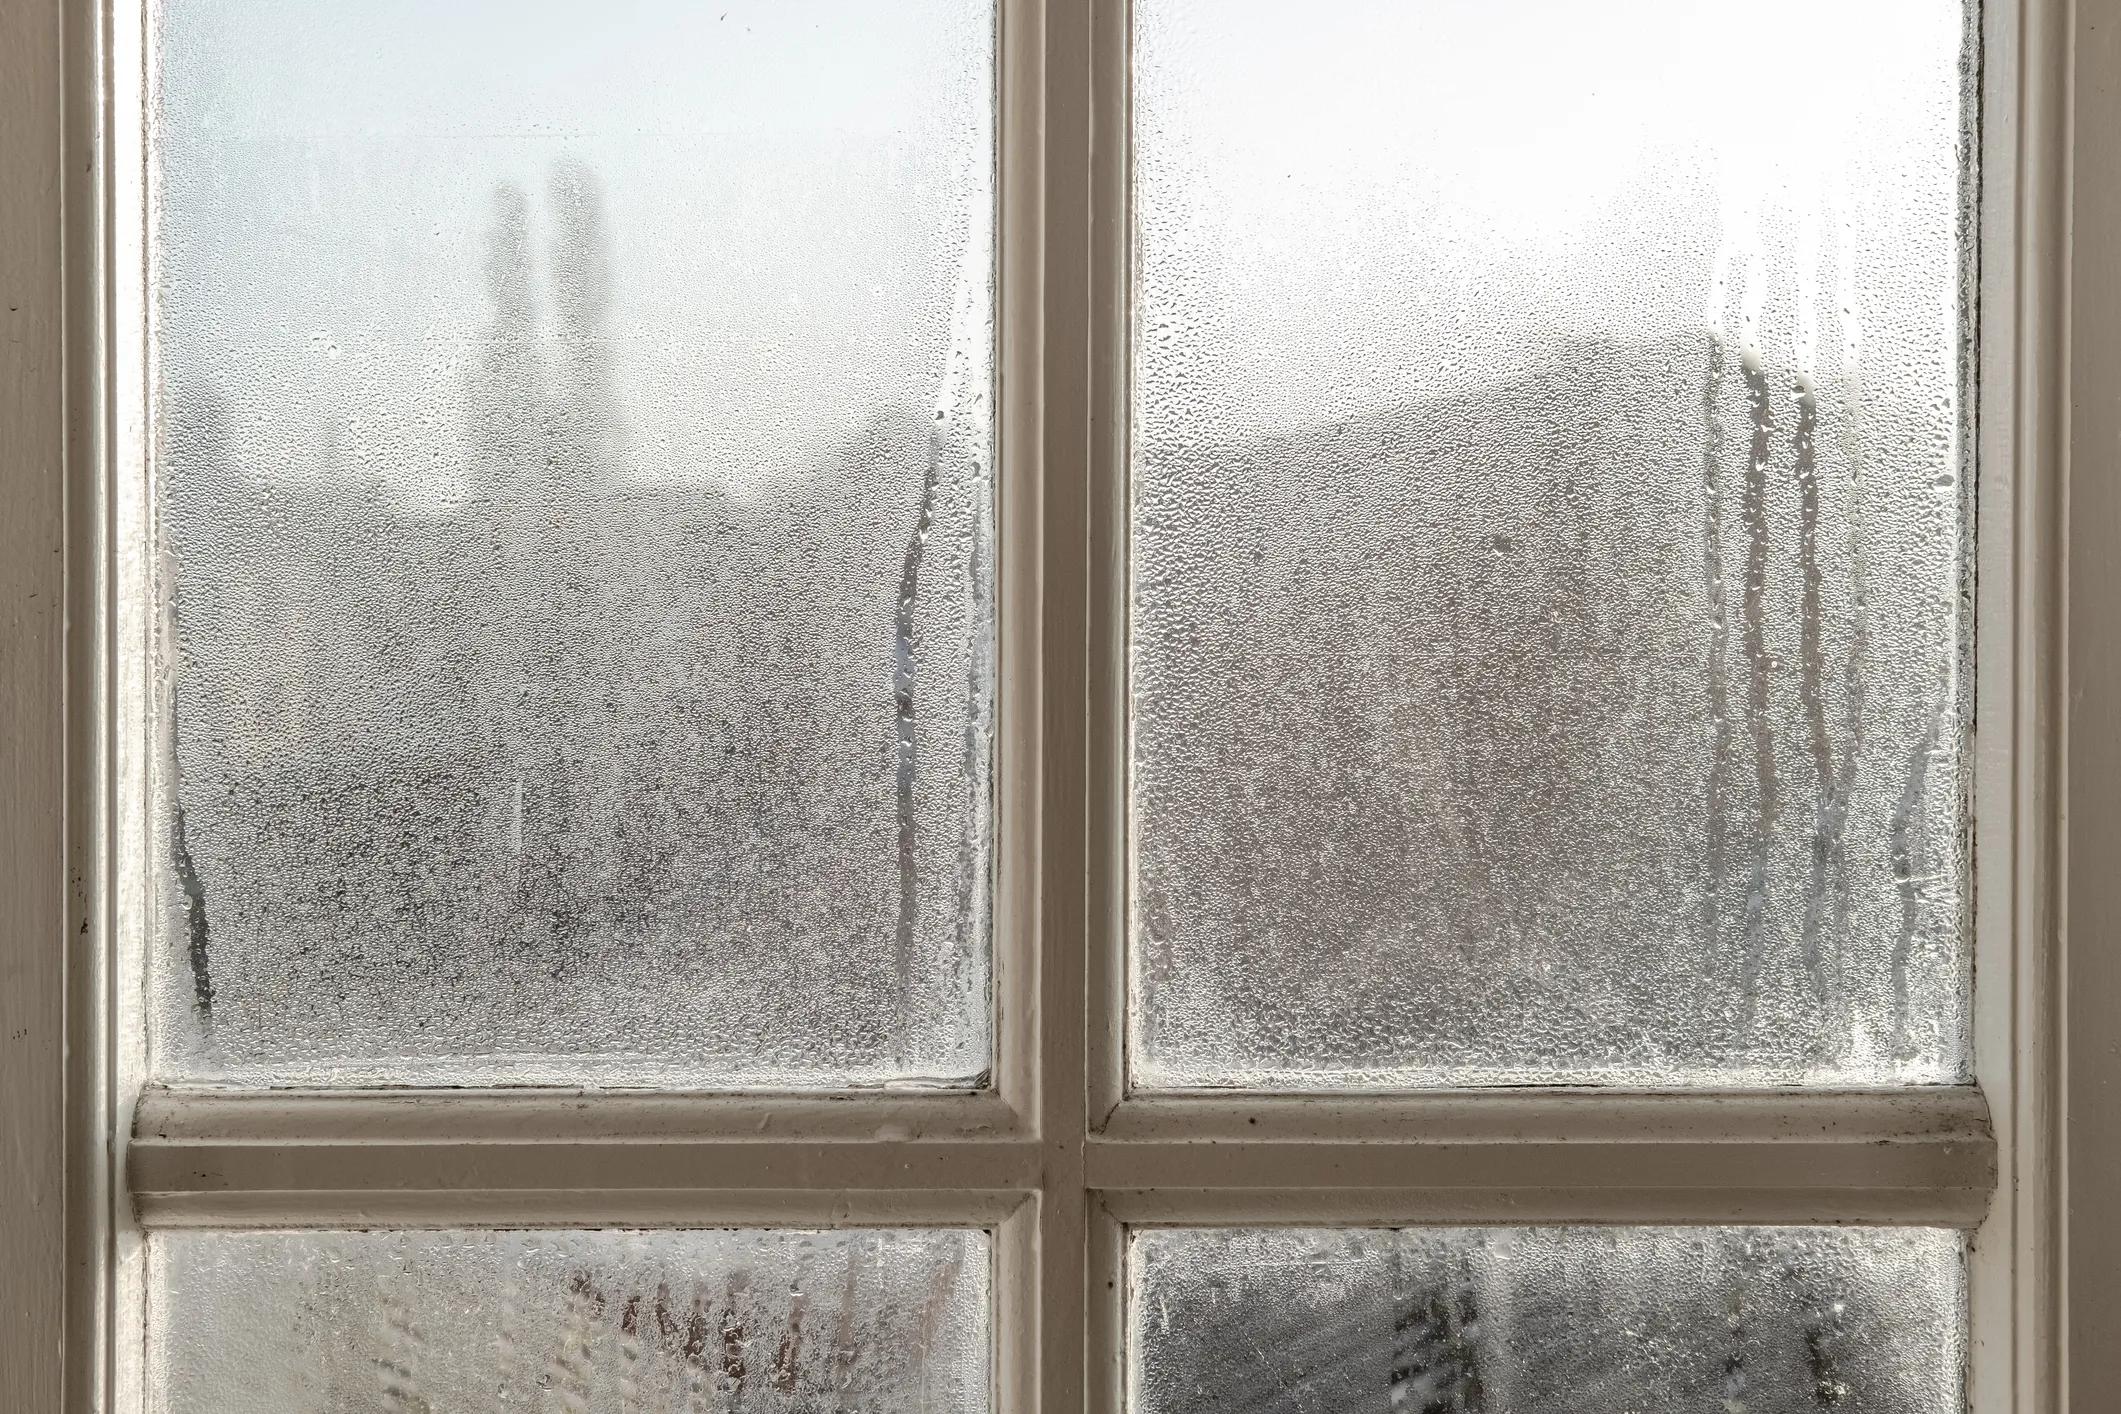 como evitar el frío en los vidrios - Qué puedo poner en las ventanas para que no entre el frío